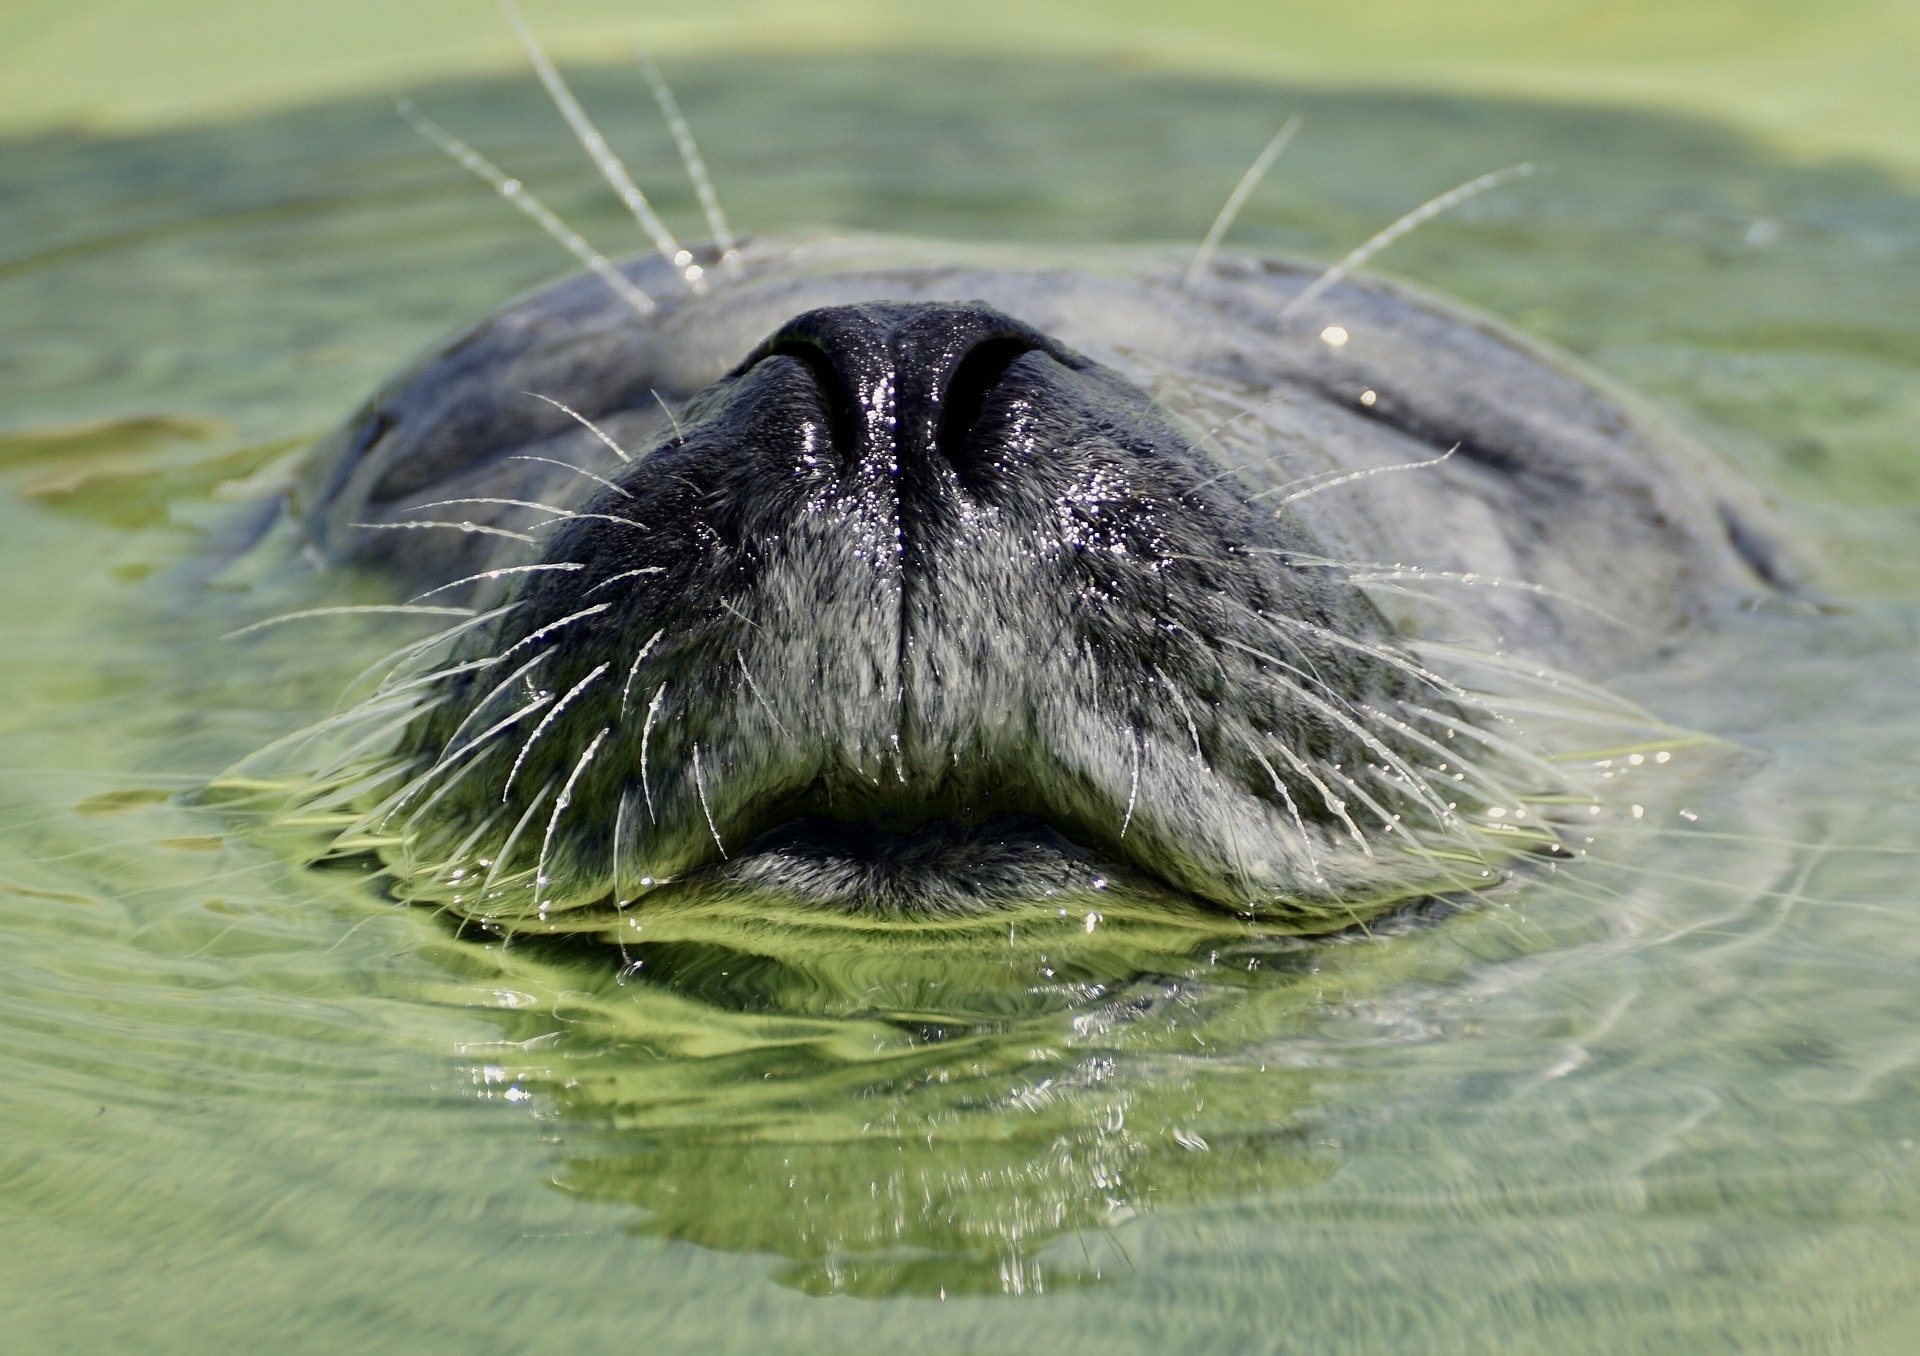 O agressor da foca foi identificado e punido com multas federais e estaduais (Foto: Pixabay)